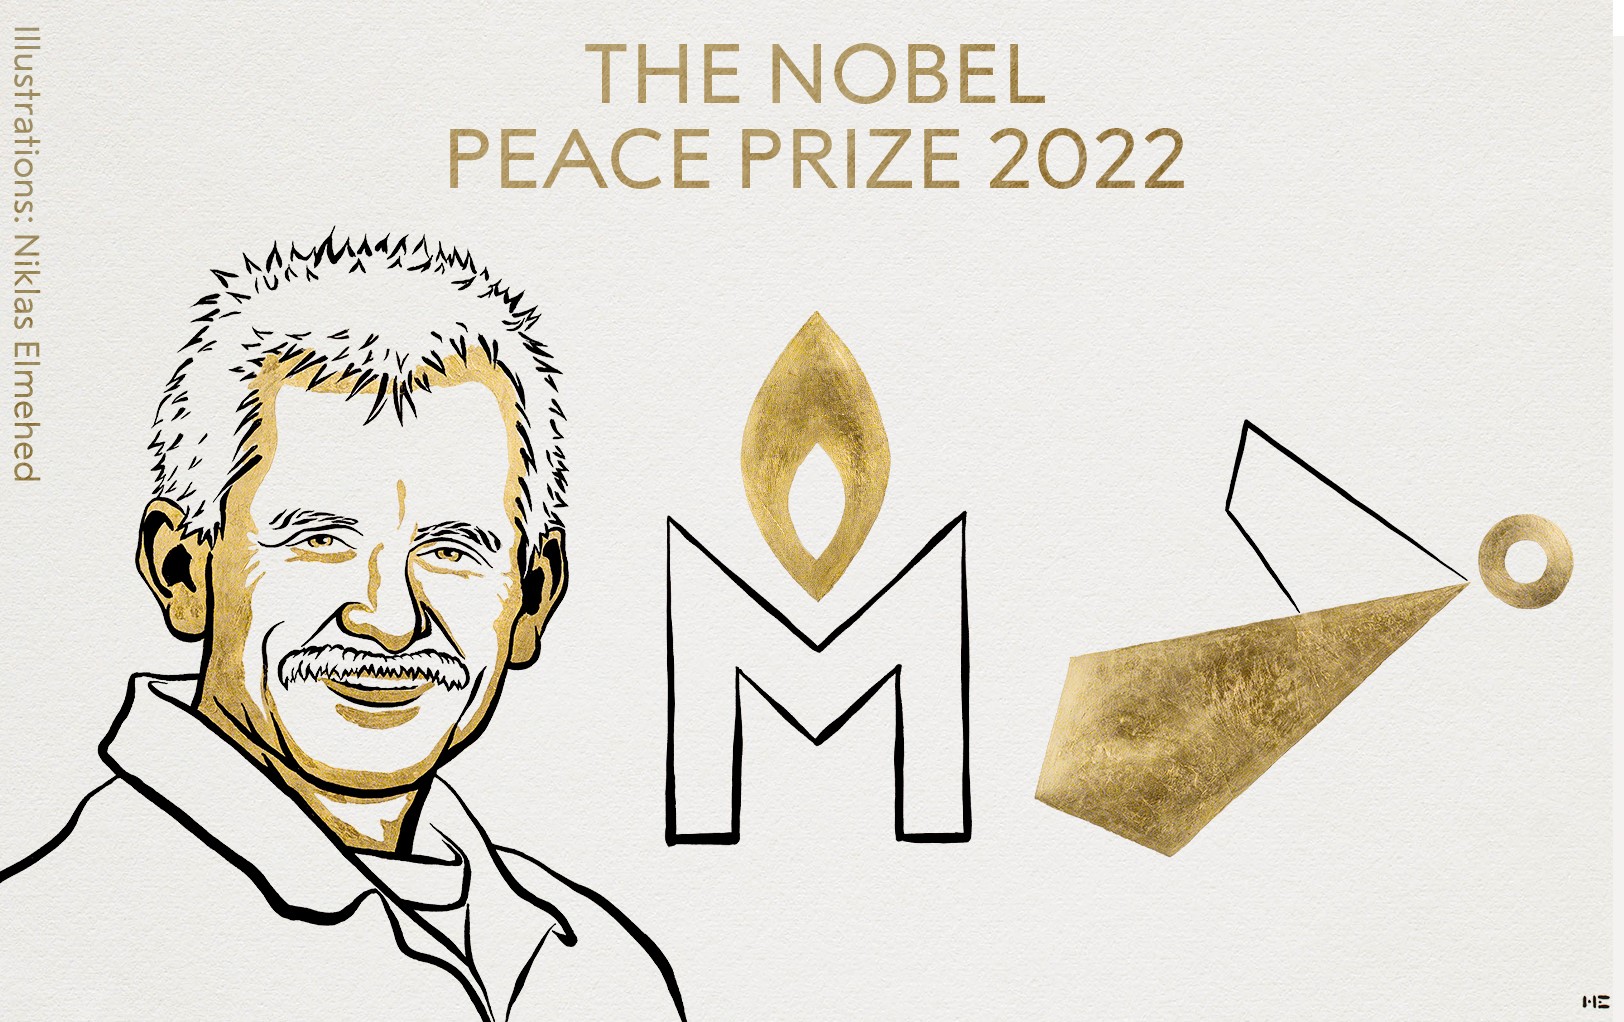 Representants de les tres iniciatives guardonades amb el Nobel de la Pau 2022 visiten Barcelona i Madrid